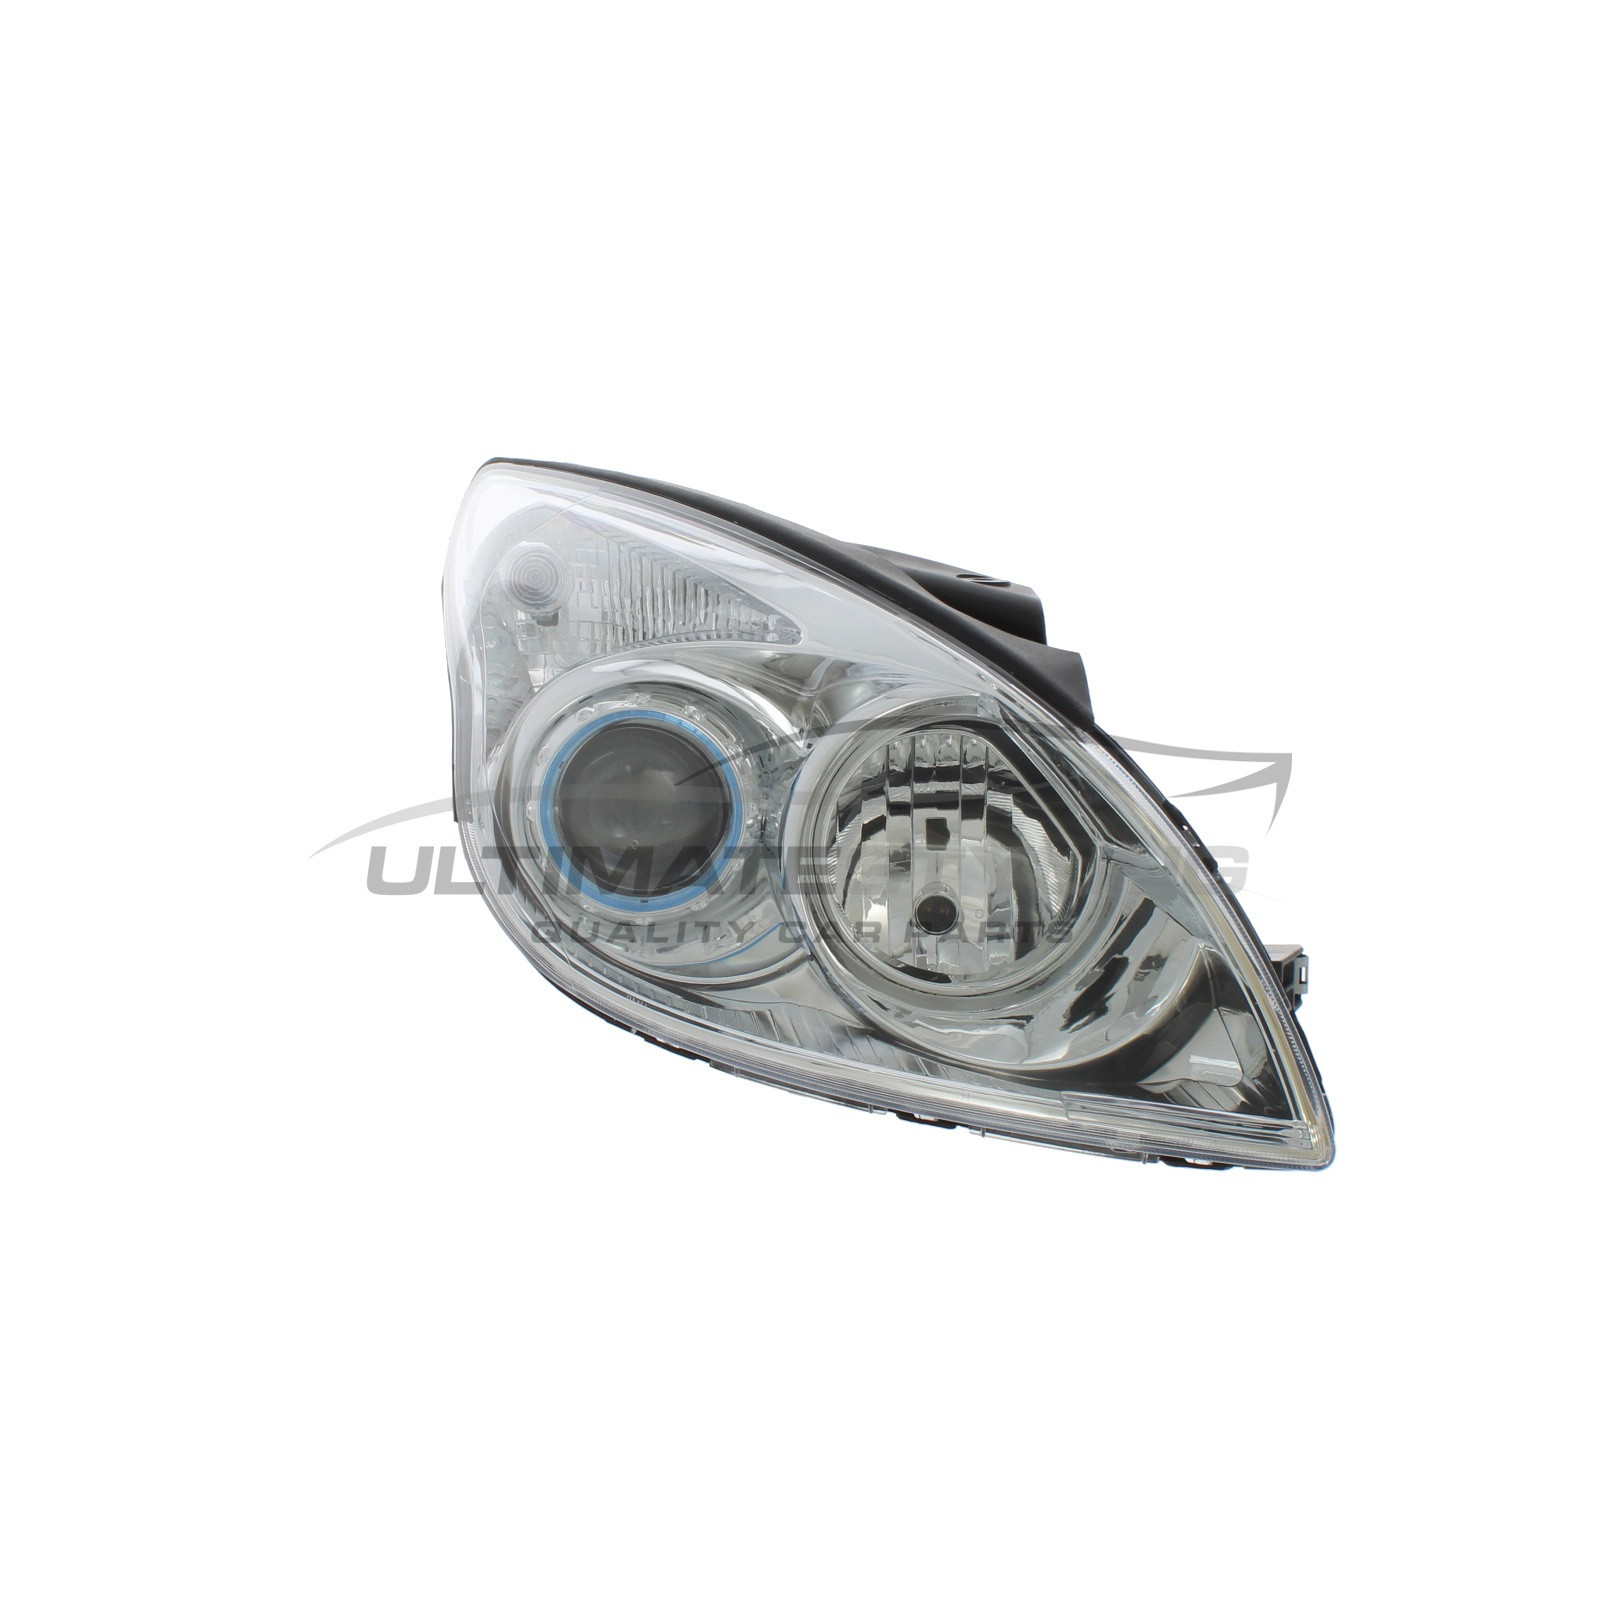 Headlight / Headlamp for Hyundai i30